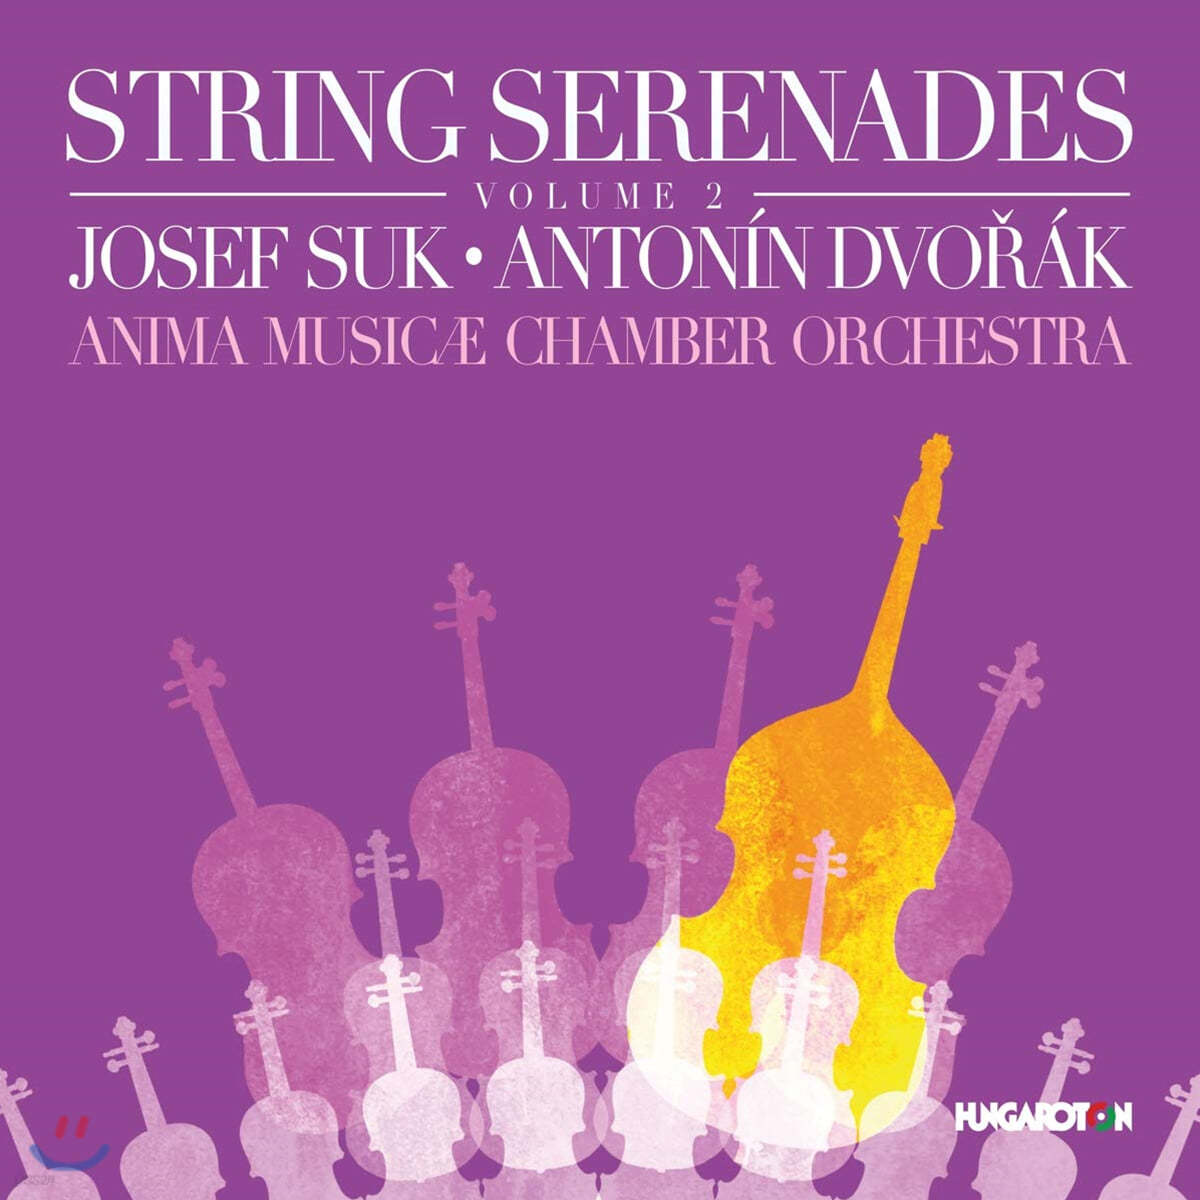 헝가로톤 레이블 현악 세레나데 2집 - 요제프 수크 / 드보르작 (String Serenades, Vol.2 - Anima Musicae Chamber Orchestra)